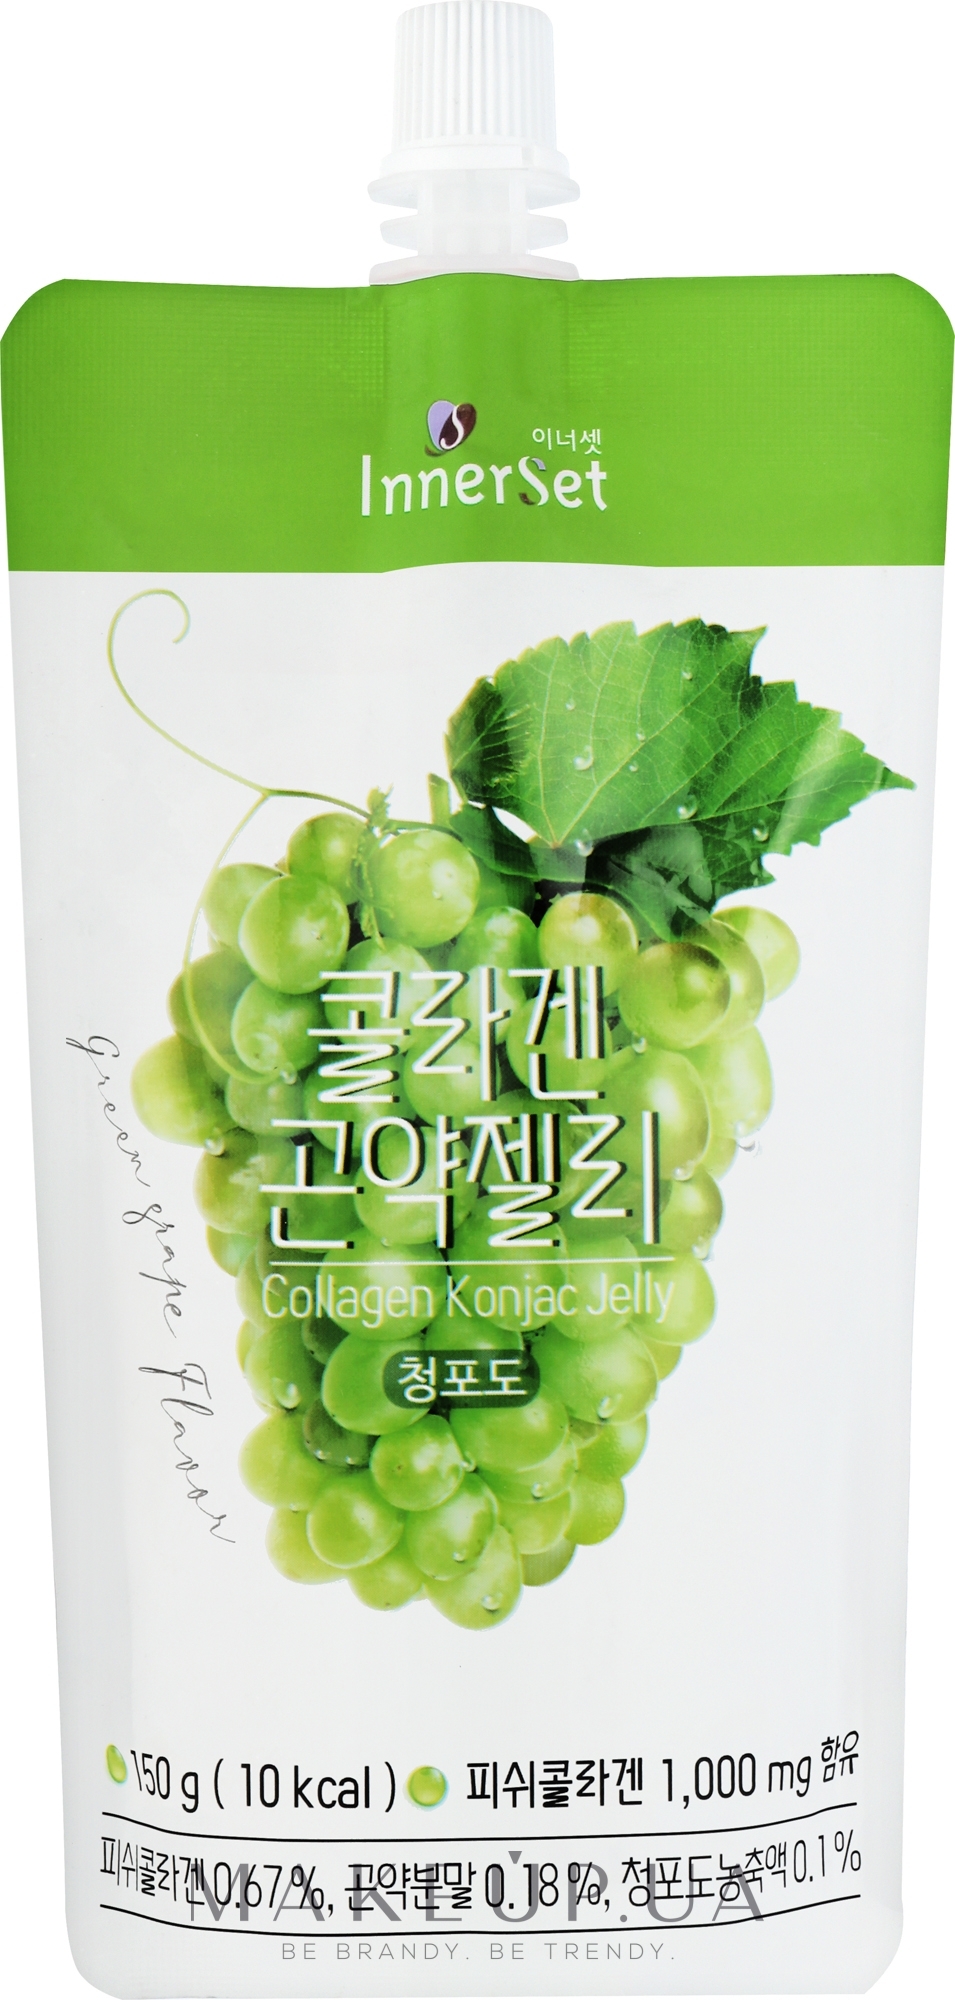 Съедобное коллагеновое желе с экстрактом винограда - Innerset Collagen Konjac Jelly — фото 150g